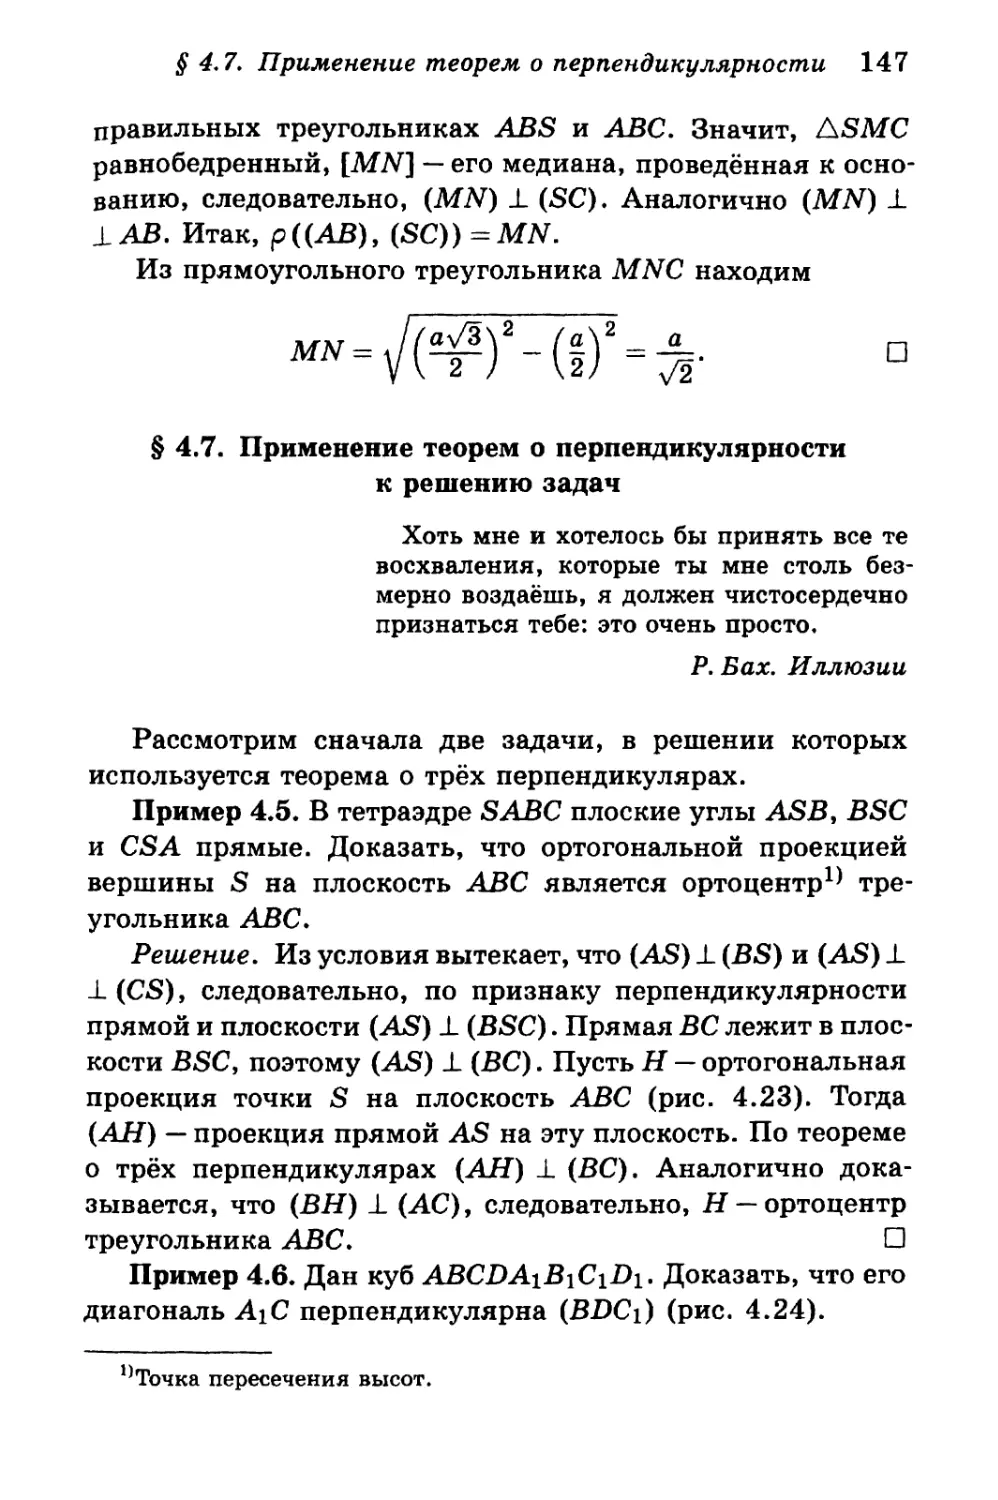 § 4.7. Применение теорем о перпендикулярности